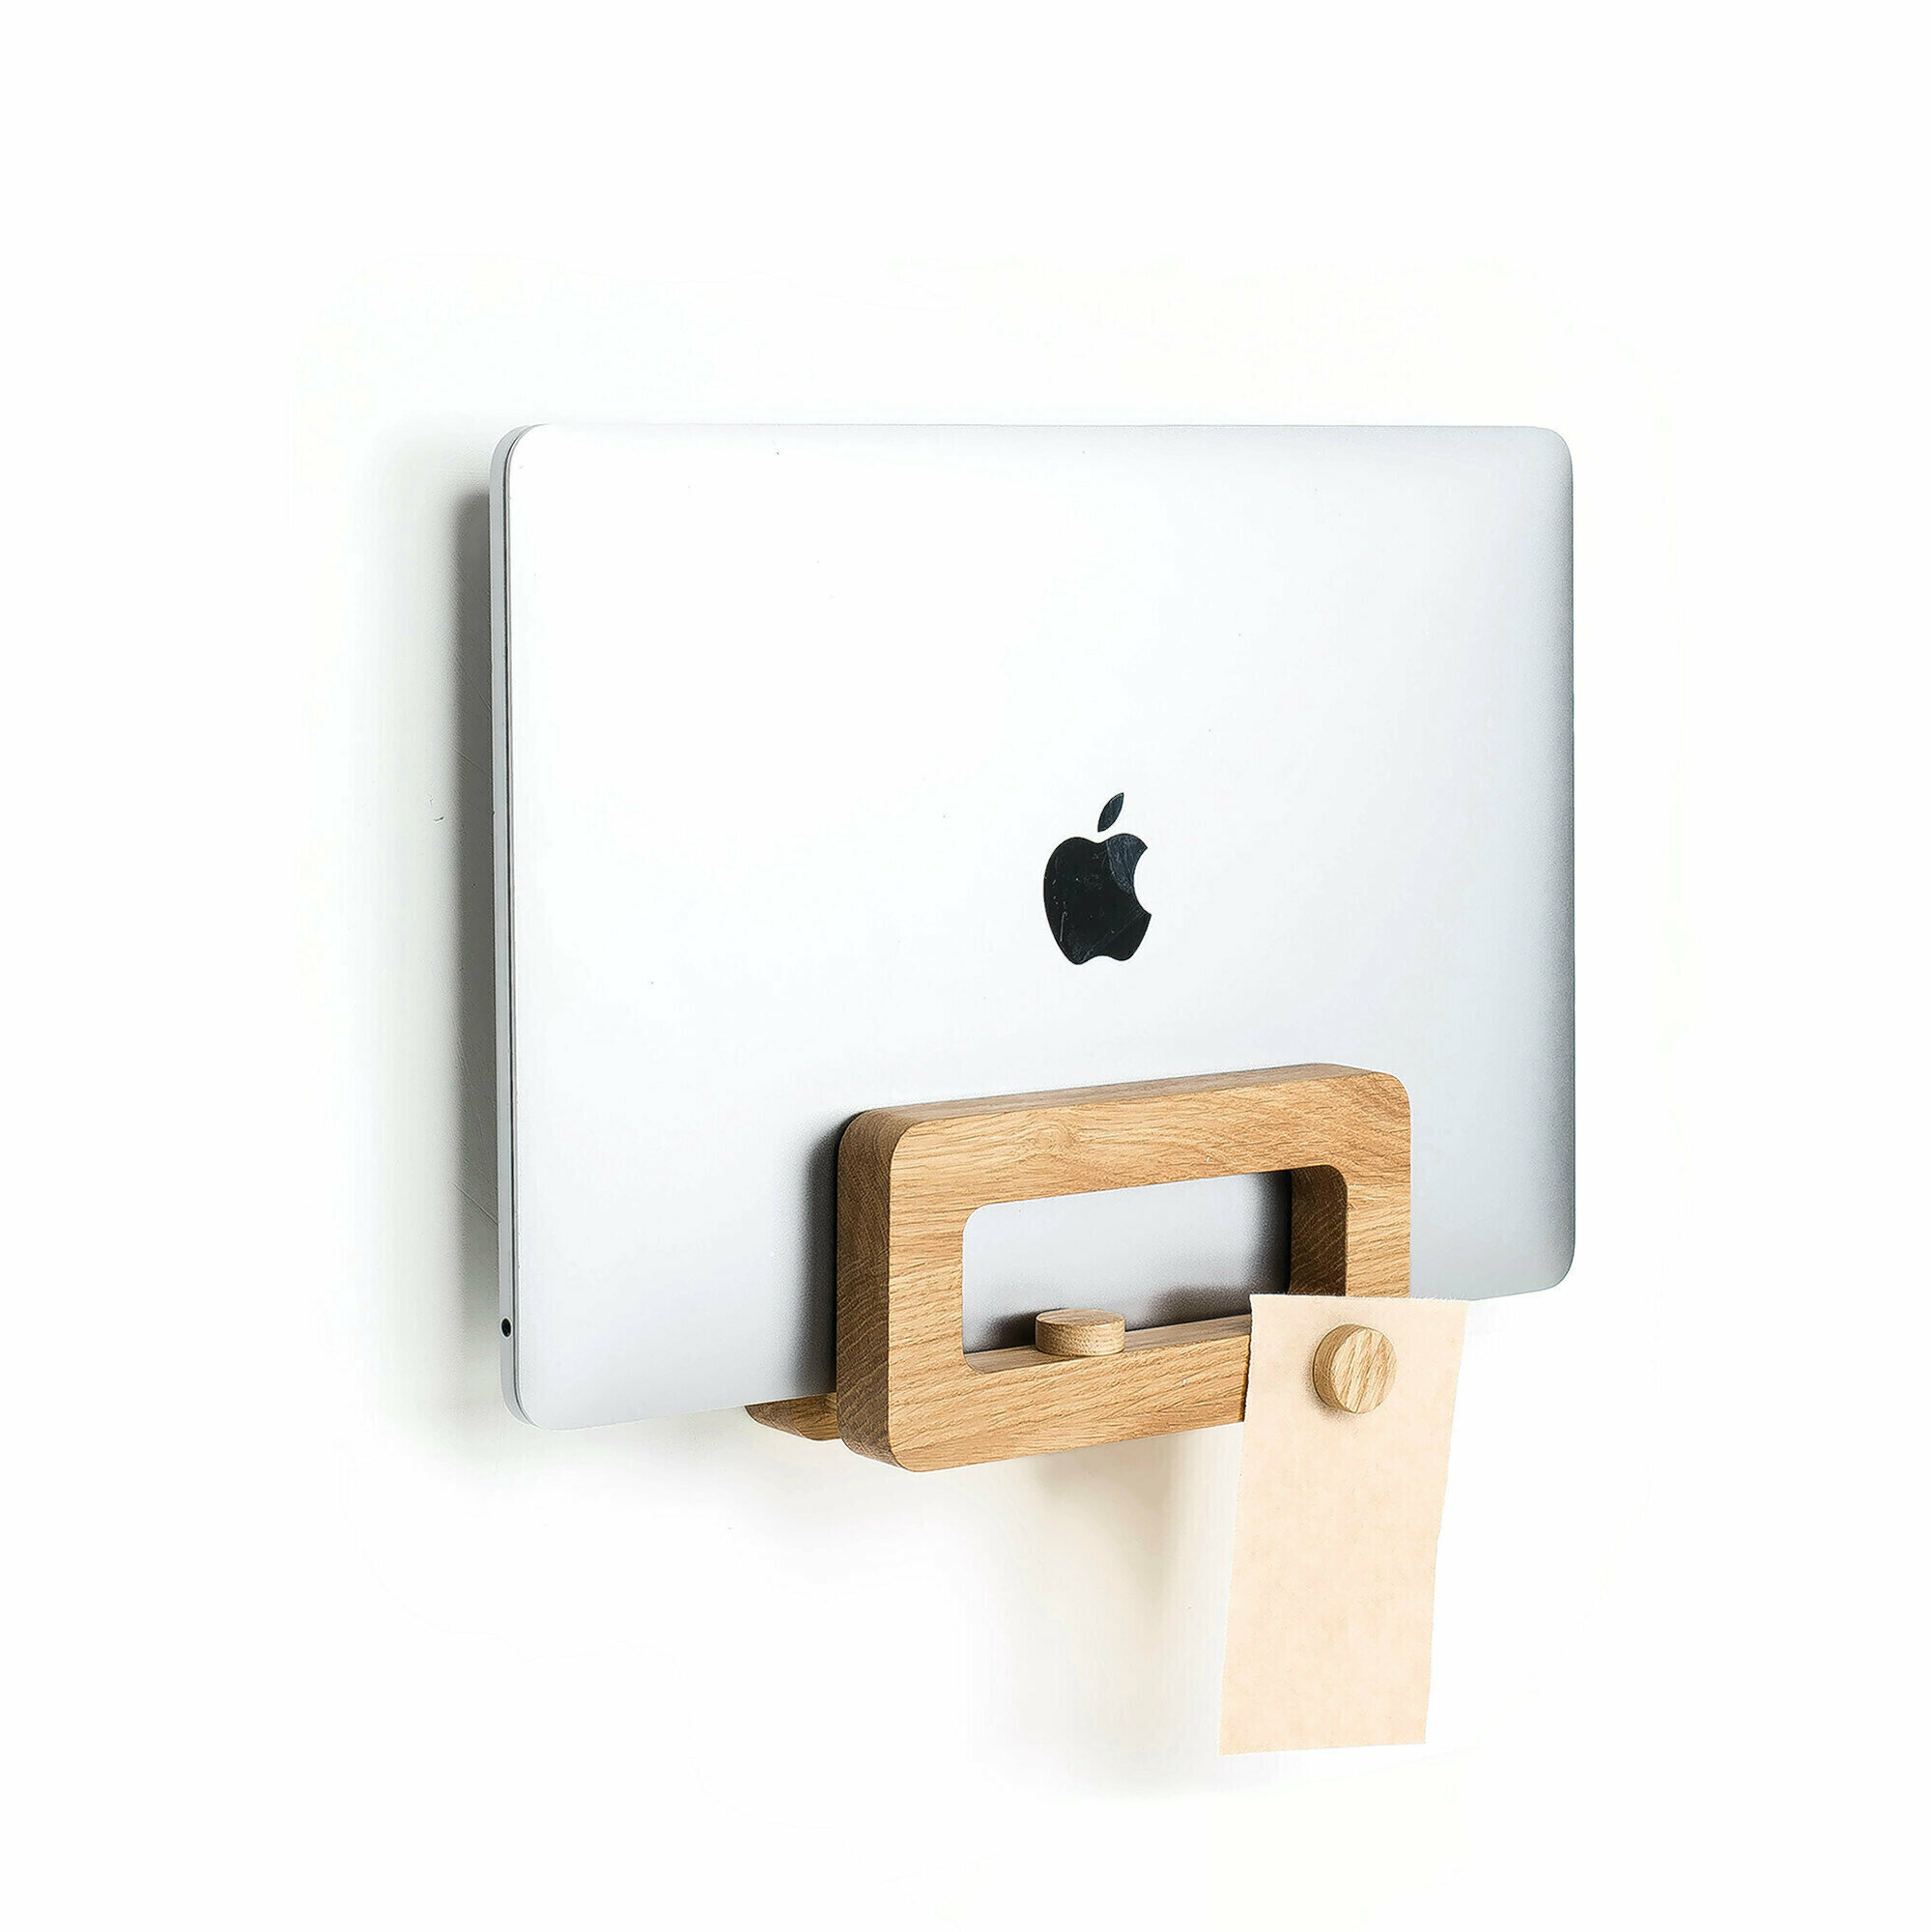 Подвесная система для ноутбука. 2 в 1 настенная / настольная подставка для MacBook. Подойдет для любого ноутбука толщиной до 20 мм.